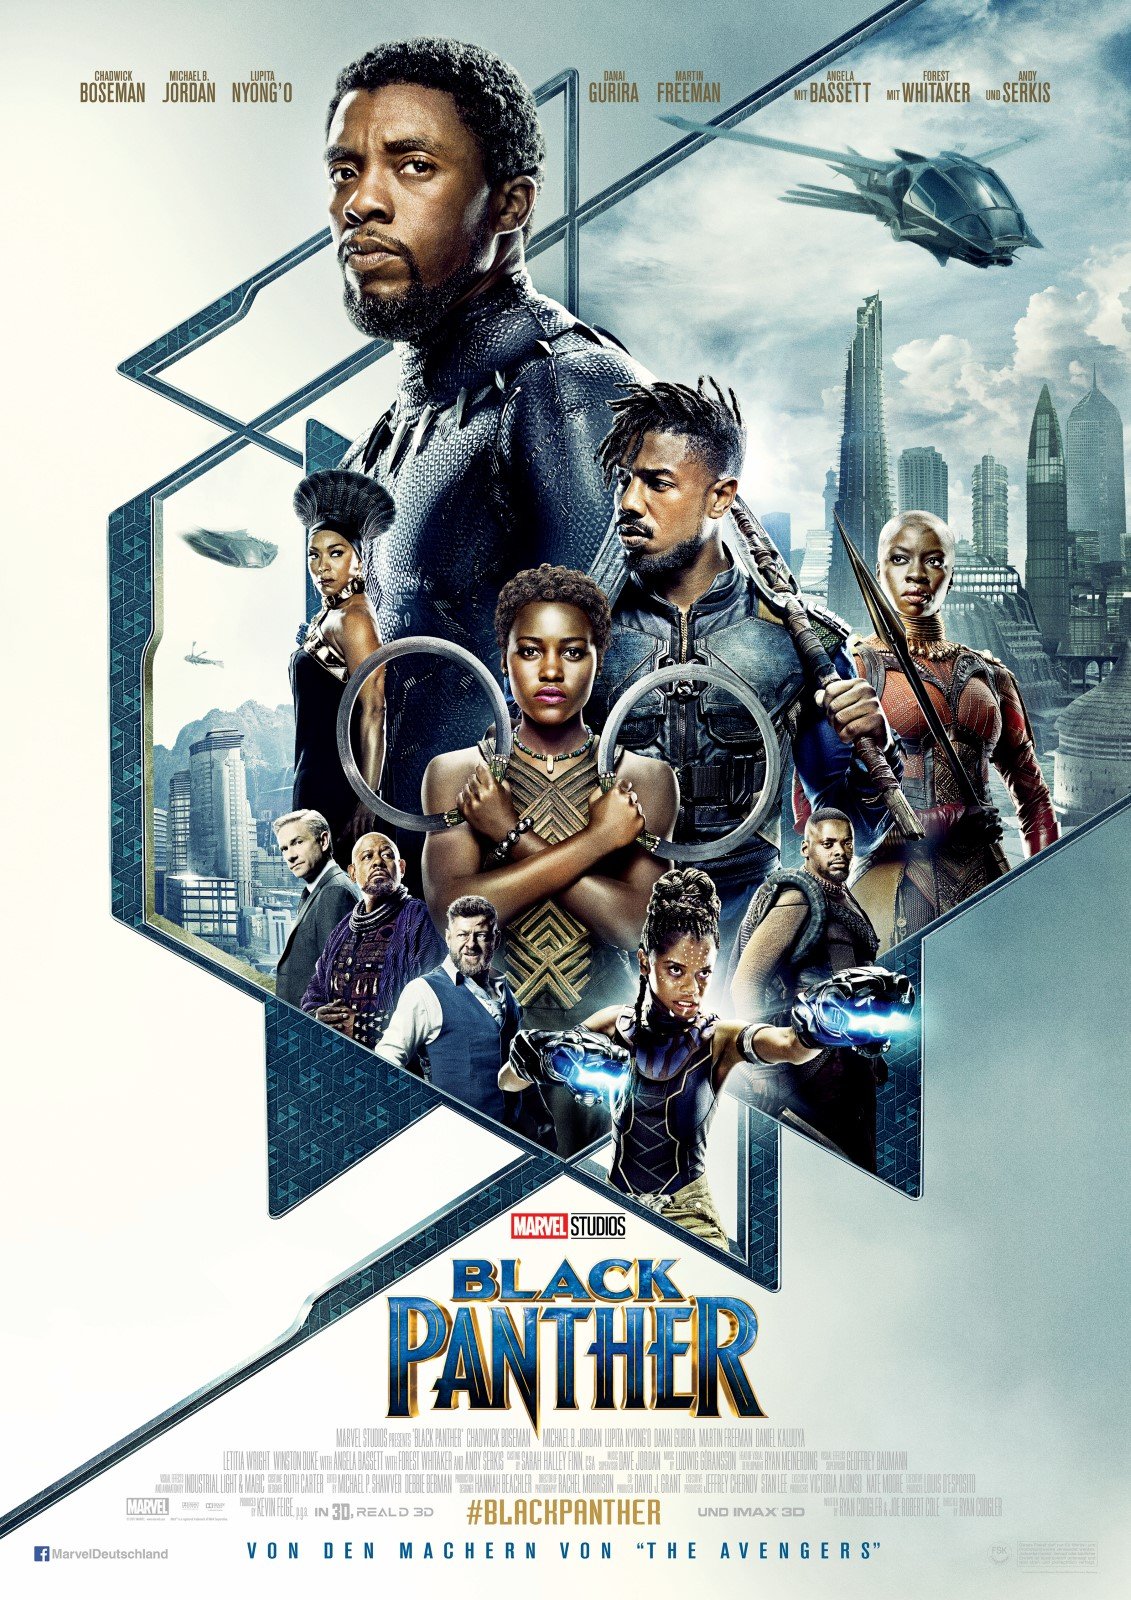 Black Panther - Die Filmstarts-Kritik auf FILMSTARTS.de